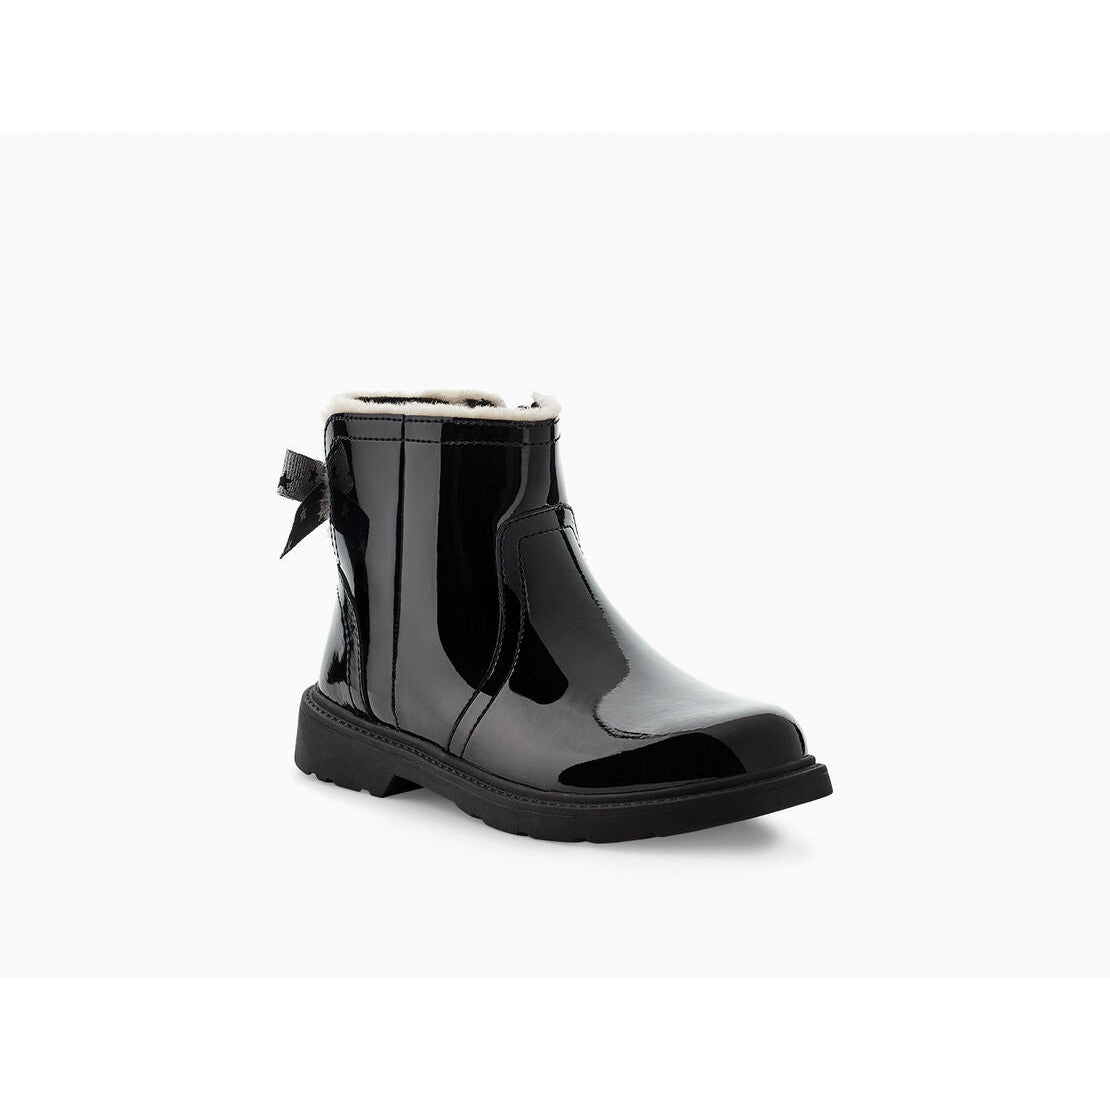 Ugg T Lynde Patent Boots - Size UK 11 - Black - Excellent